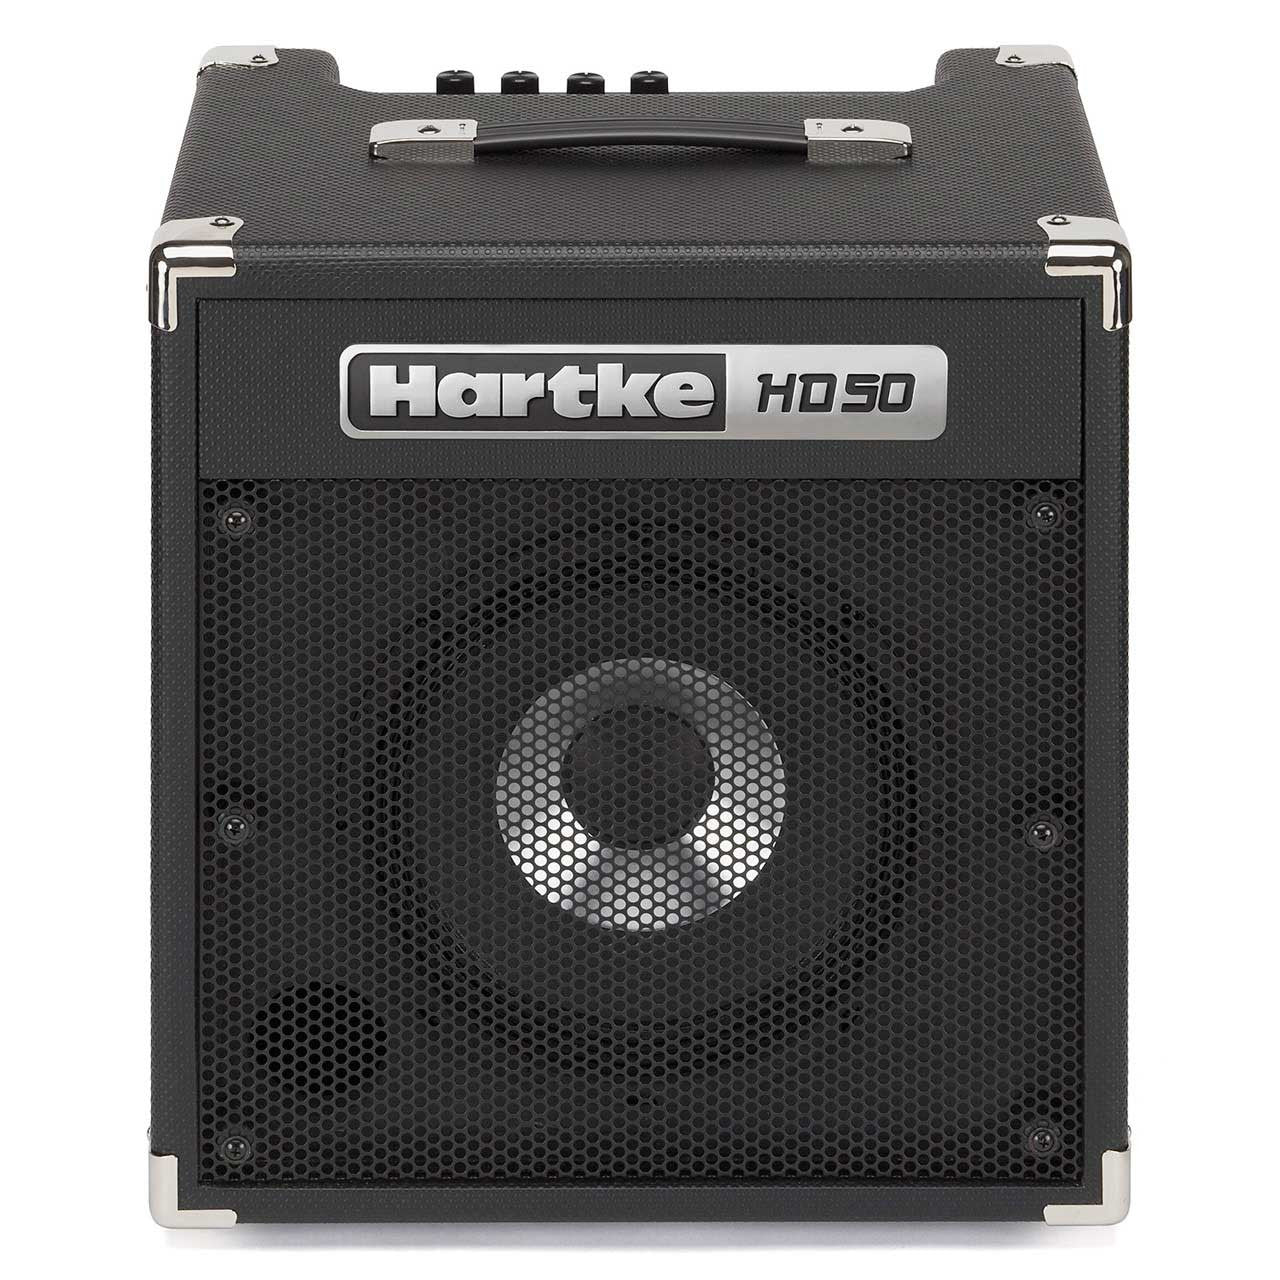 HARTKE HD50, HARTKE, BASS AMPLIFIER, hartke-hd50, ZOSO MUSIC SDN BHD